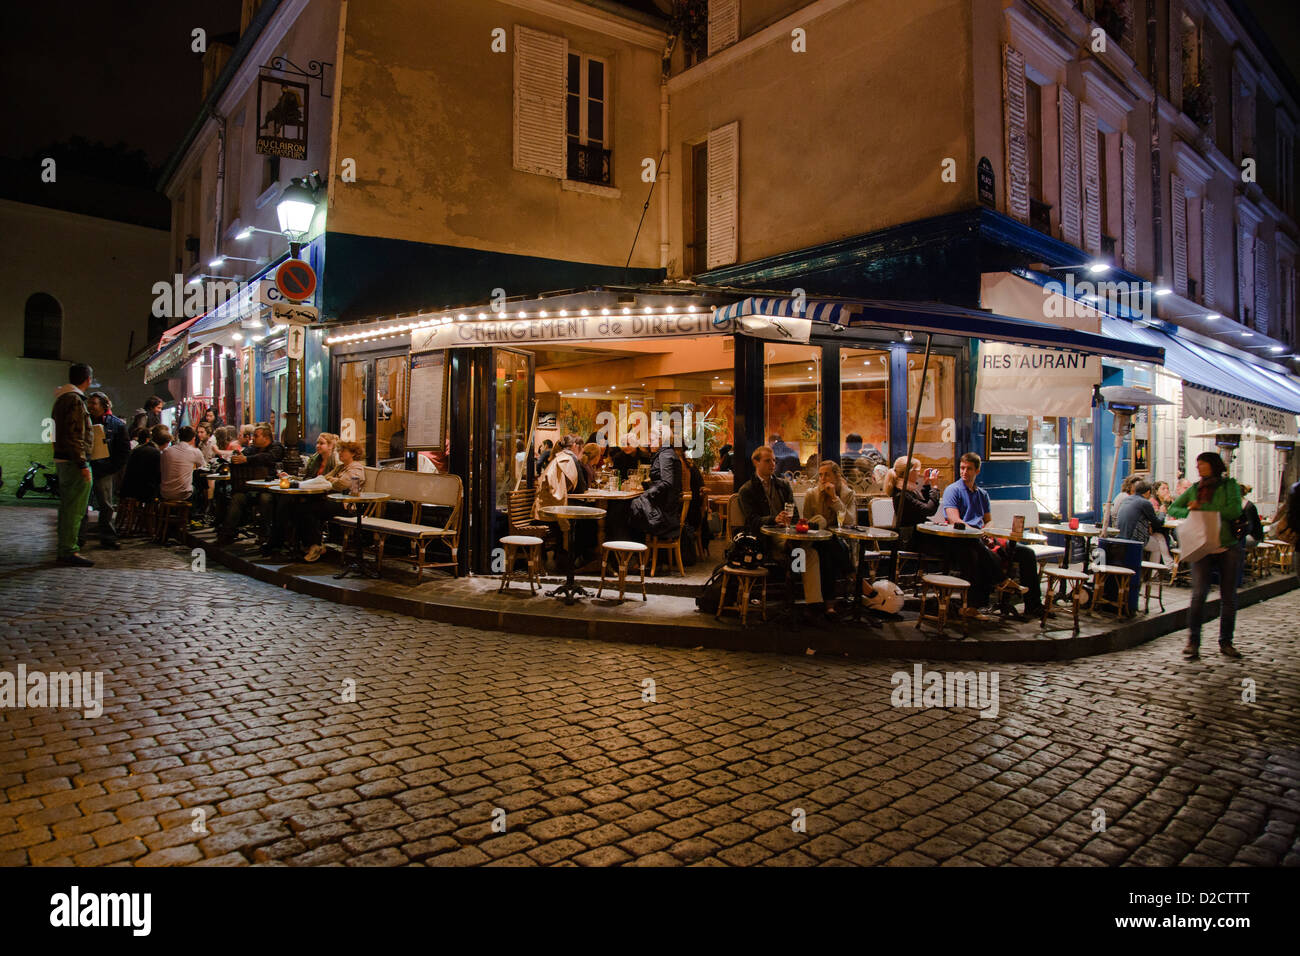 restaurant Changement de direction in Montmartre at night Stock Photo